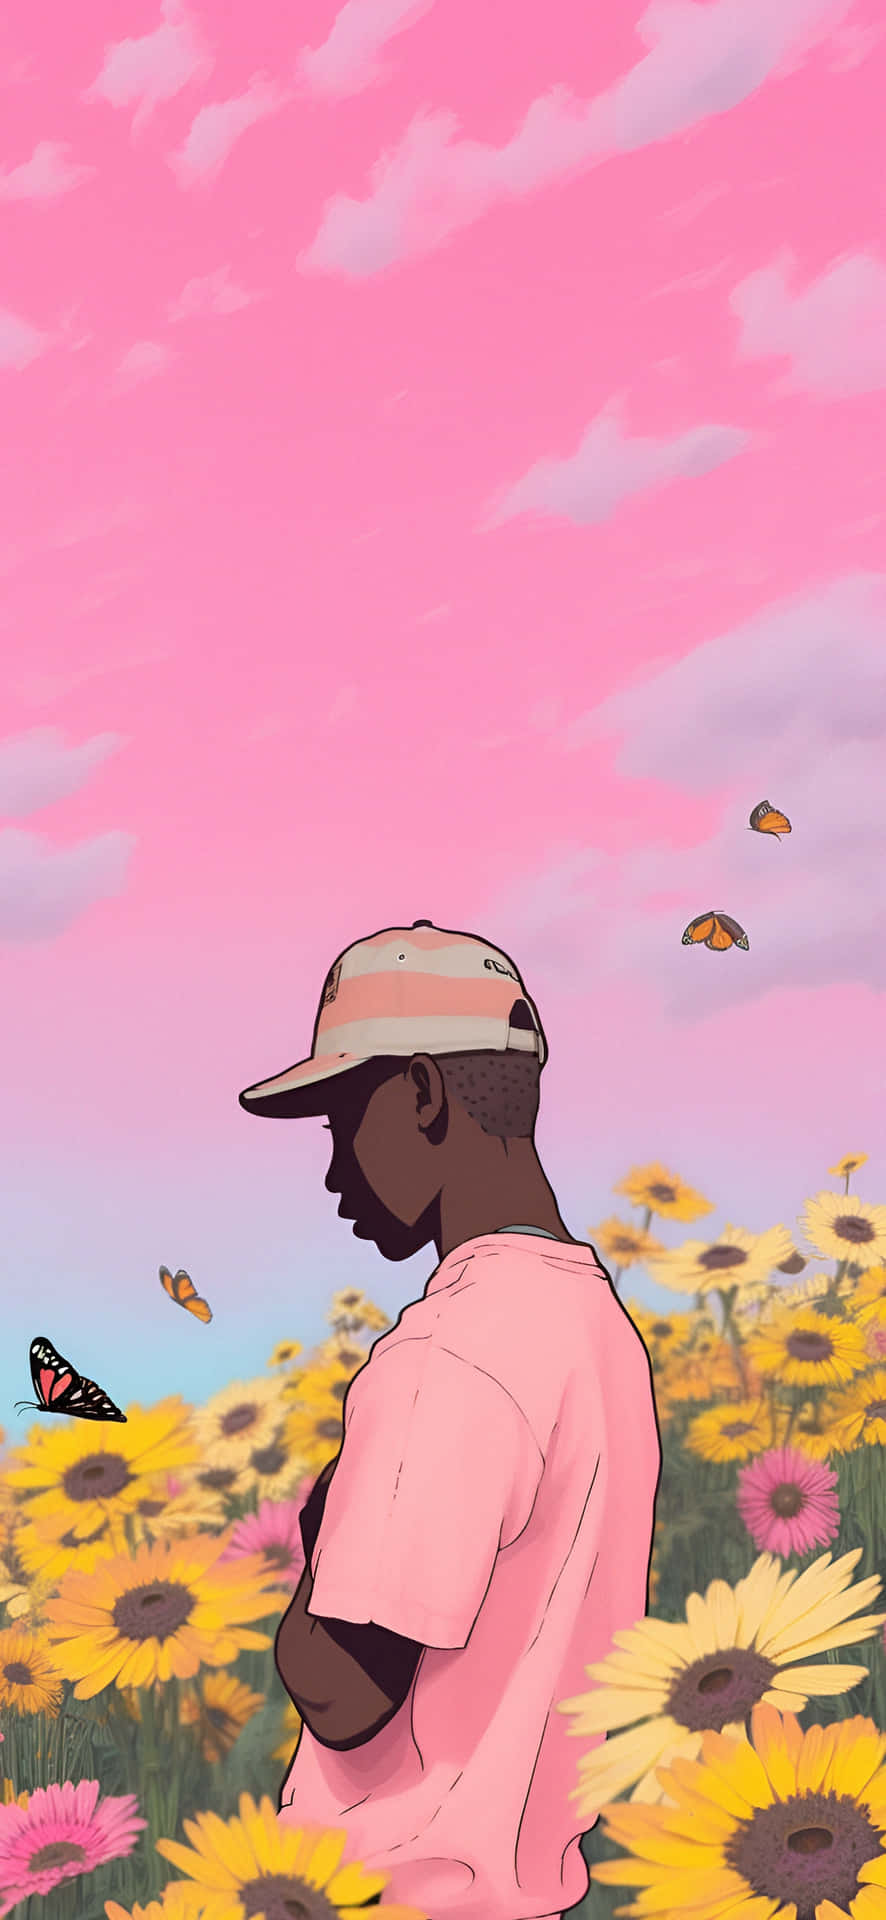 Tyler The Creator Inspired Sunflower Field Art Wallpaper